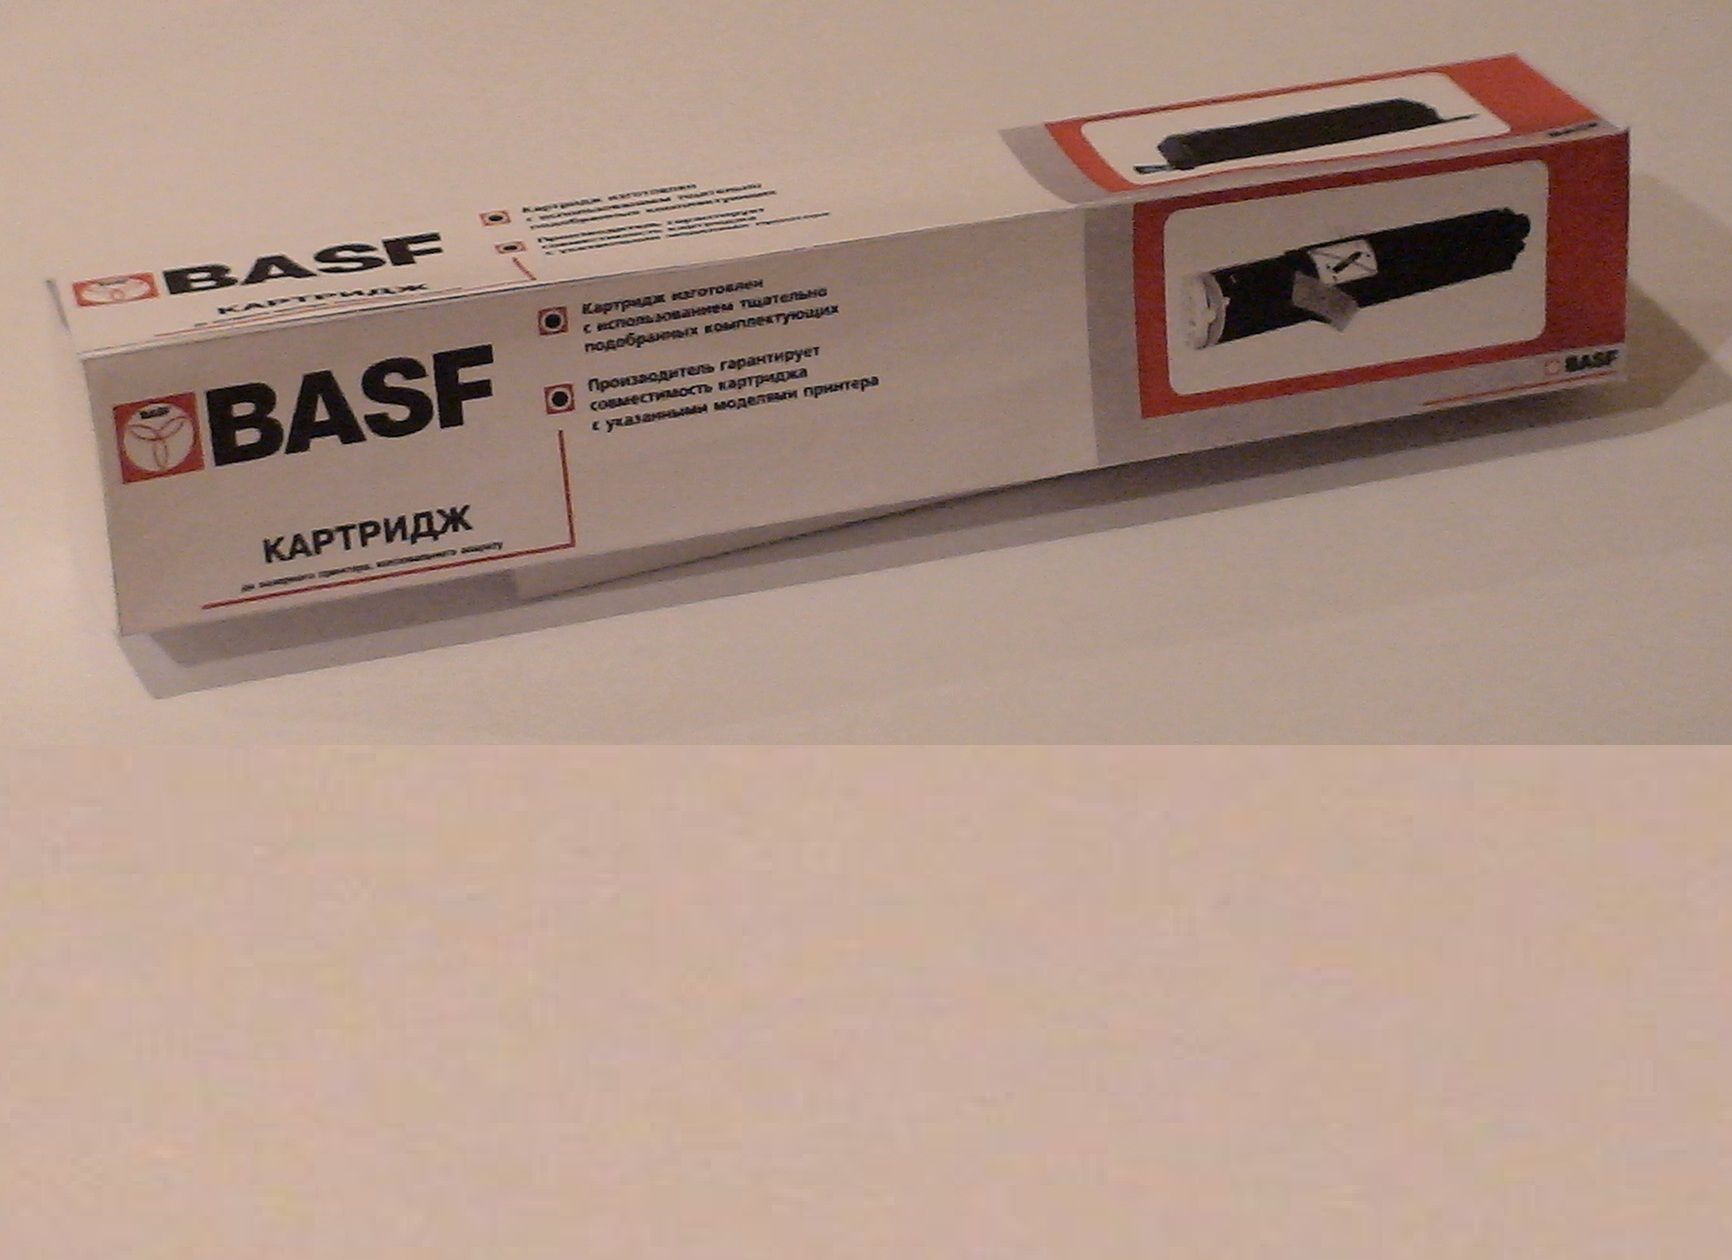   BASF   NP-6016/6218/6621  NPG-9